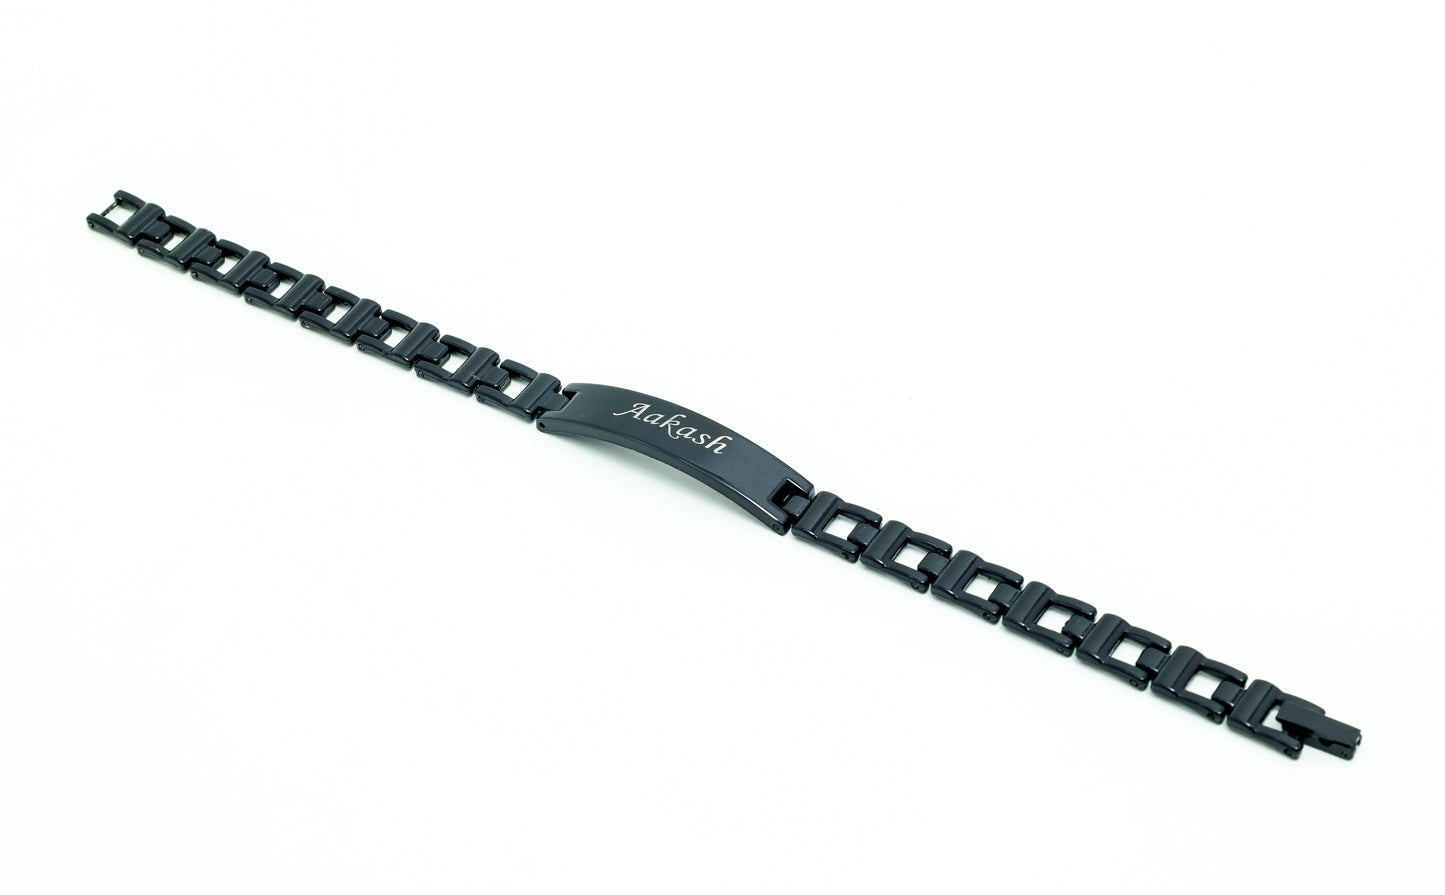 Engravable Bracelets for Men & Women - Available in 4 Colors